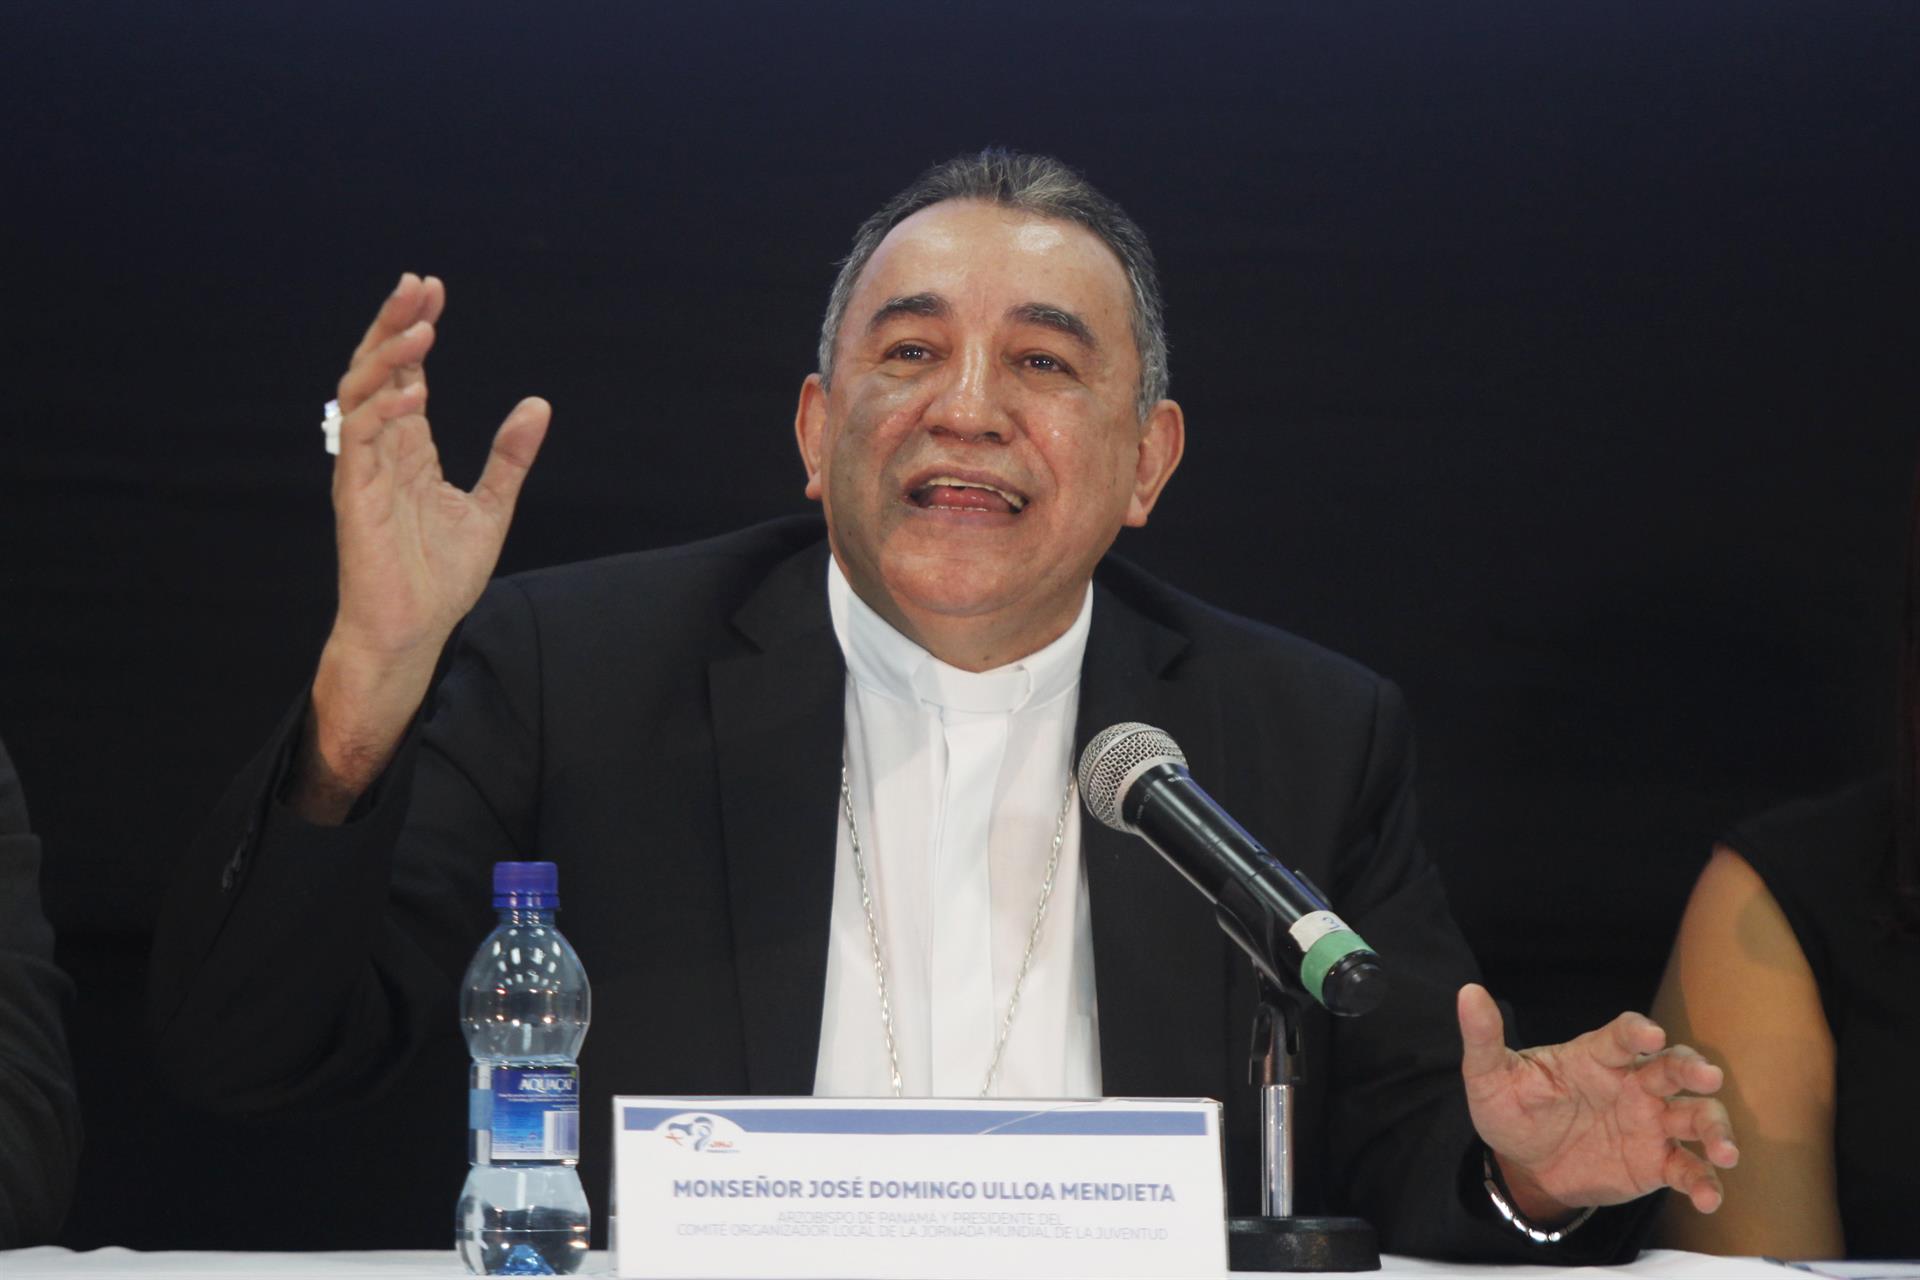 Arzobispo pide que se deje de ver la corrupción "como algo normal" en Panamá